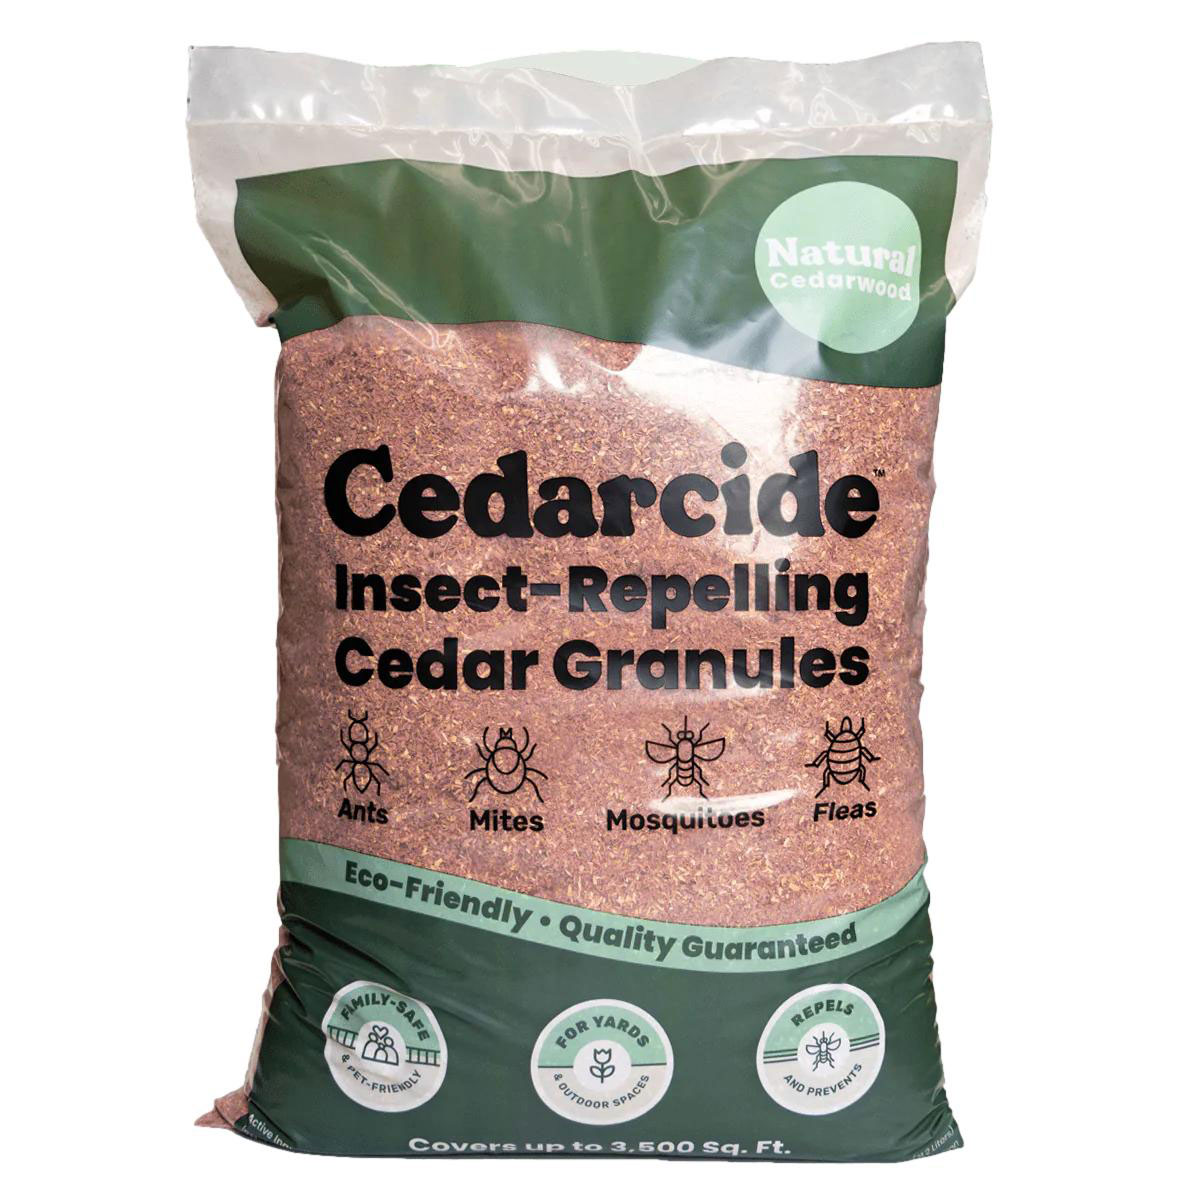 Cedarcide Cedarwood Granules